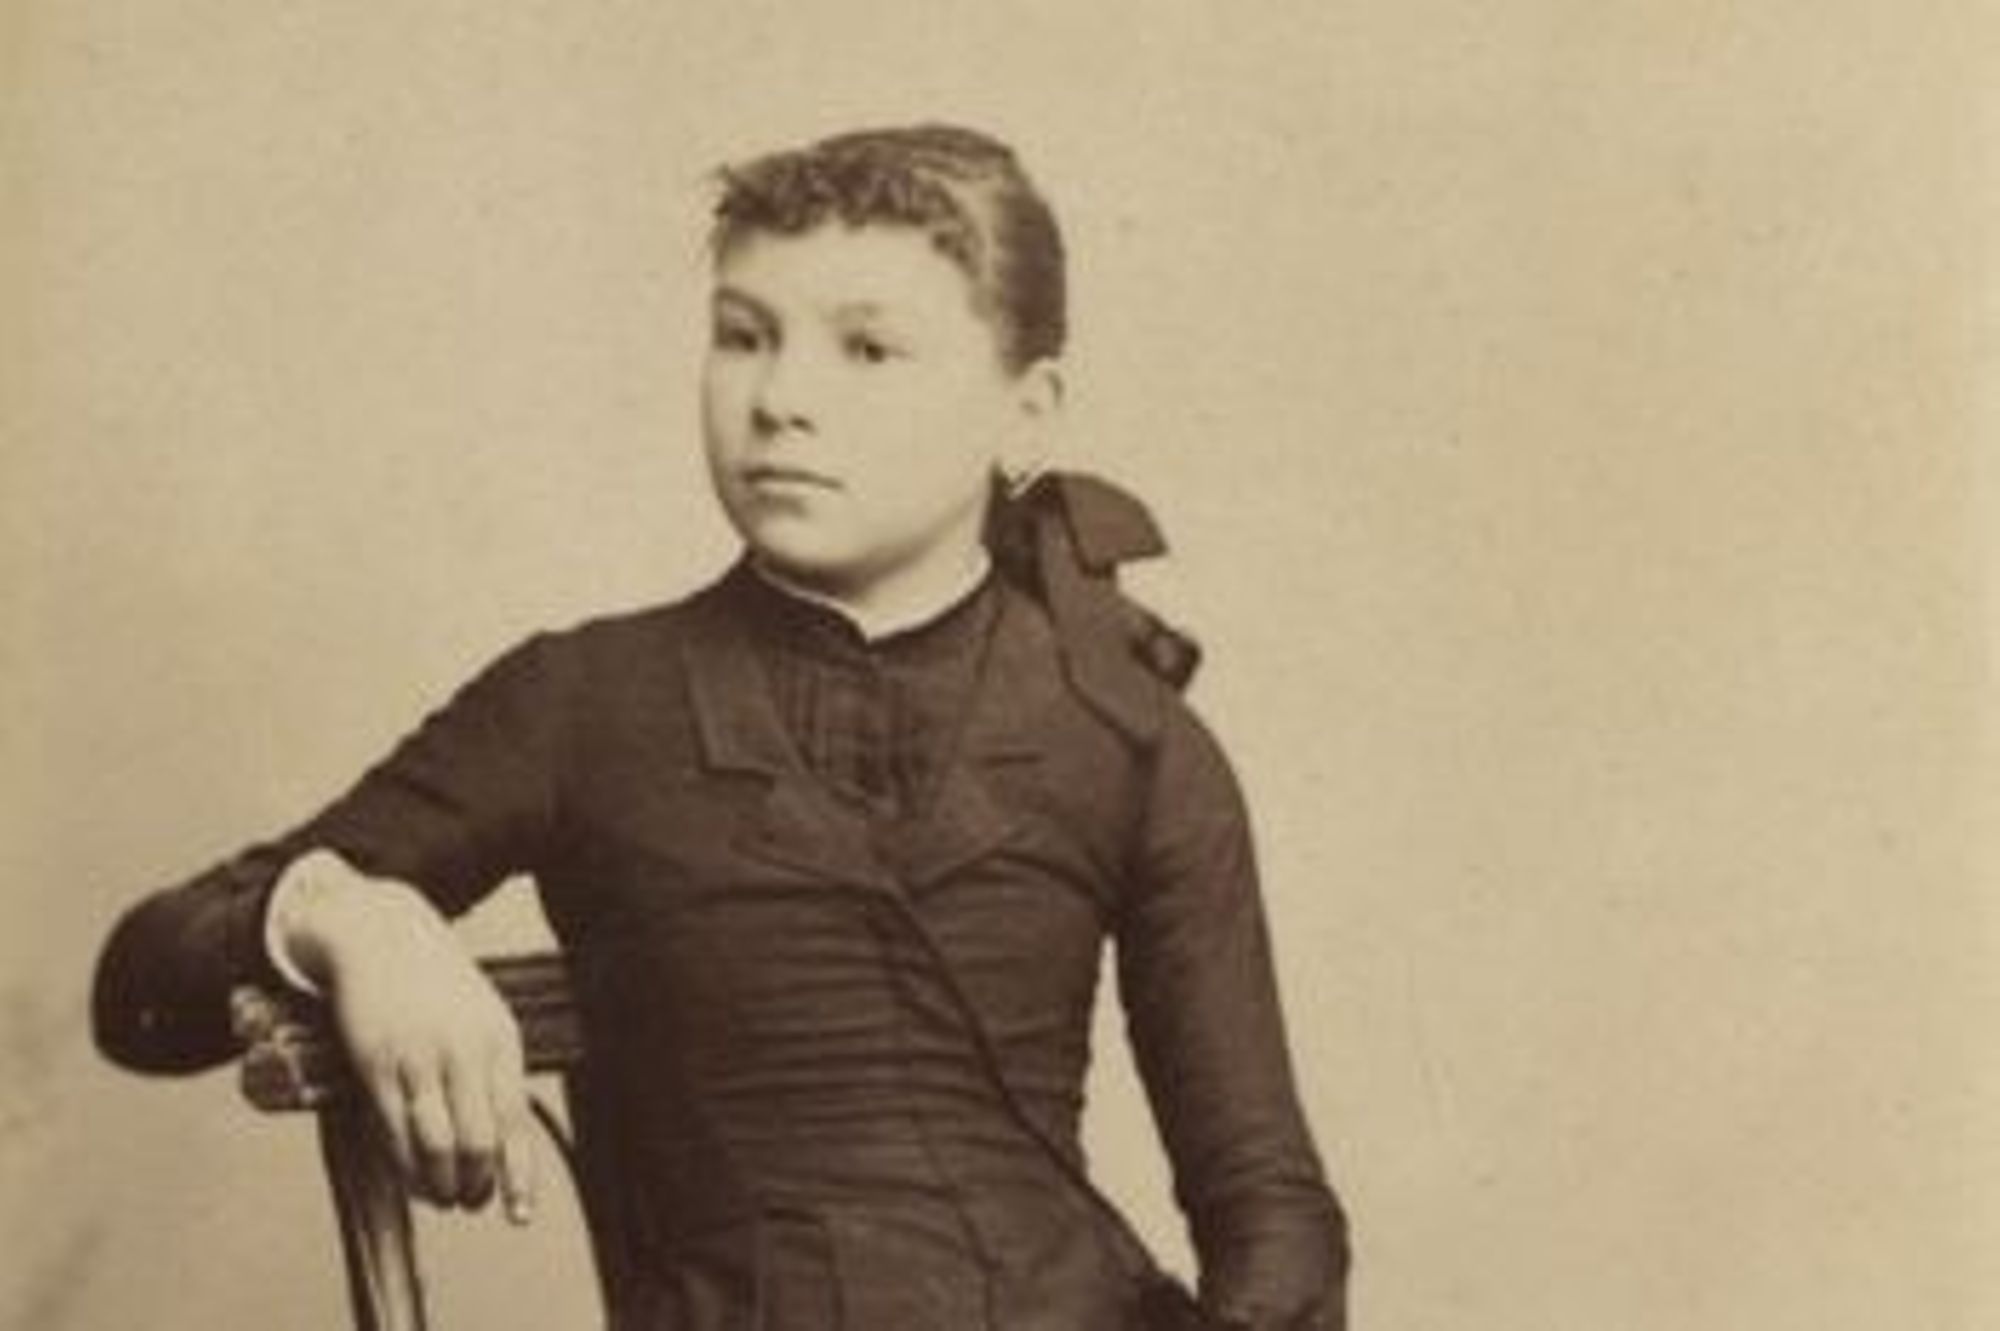 Jeune fille assise, tenant une photo dans la main gauche. (Arch. dép. du Loiret, 7 FI 19)